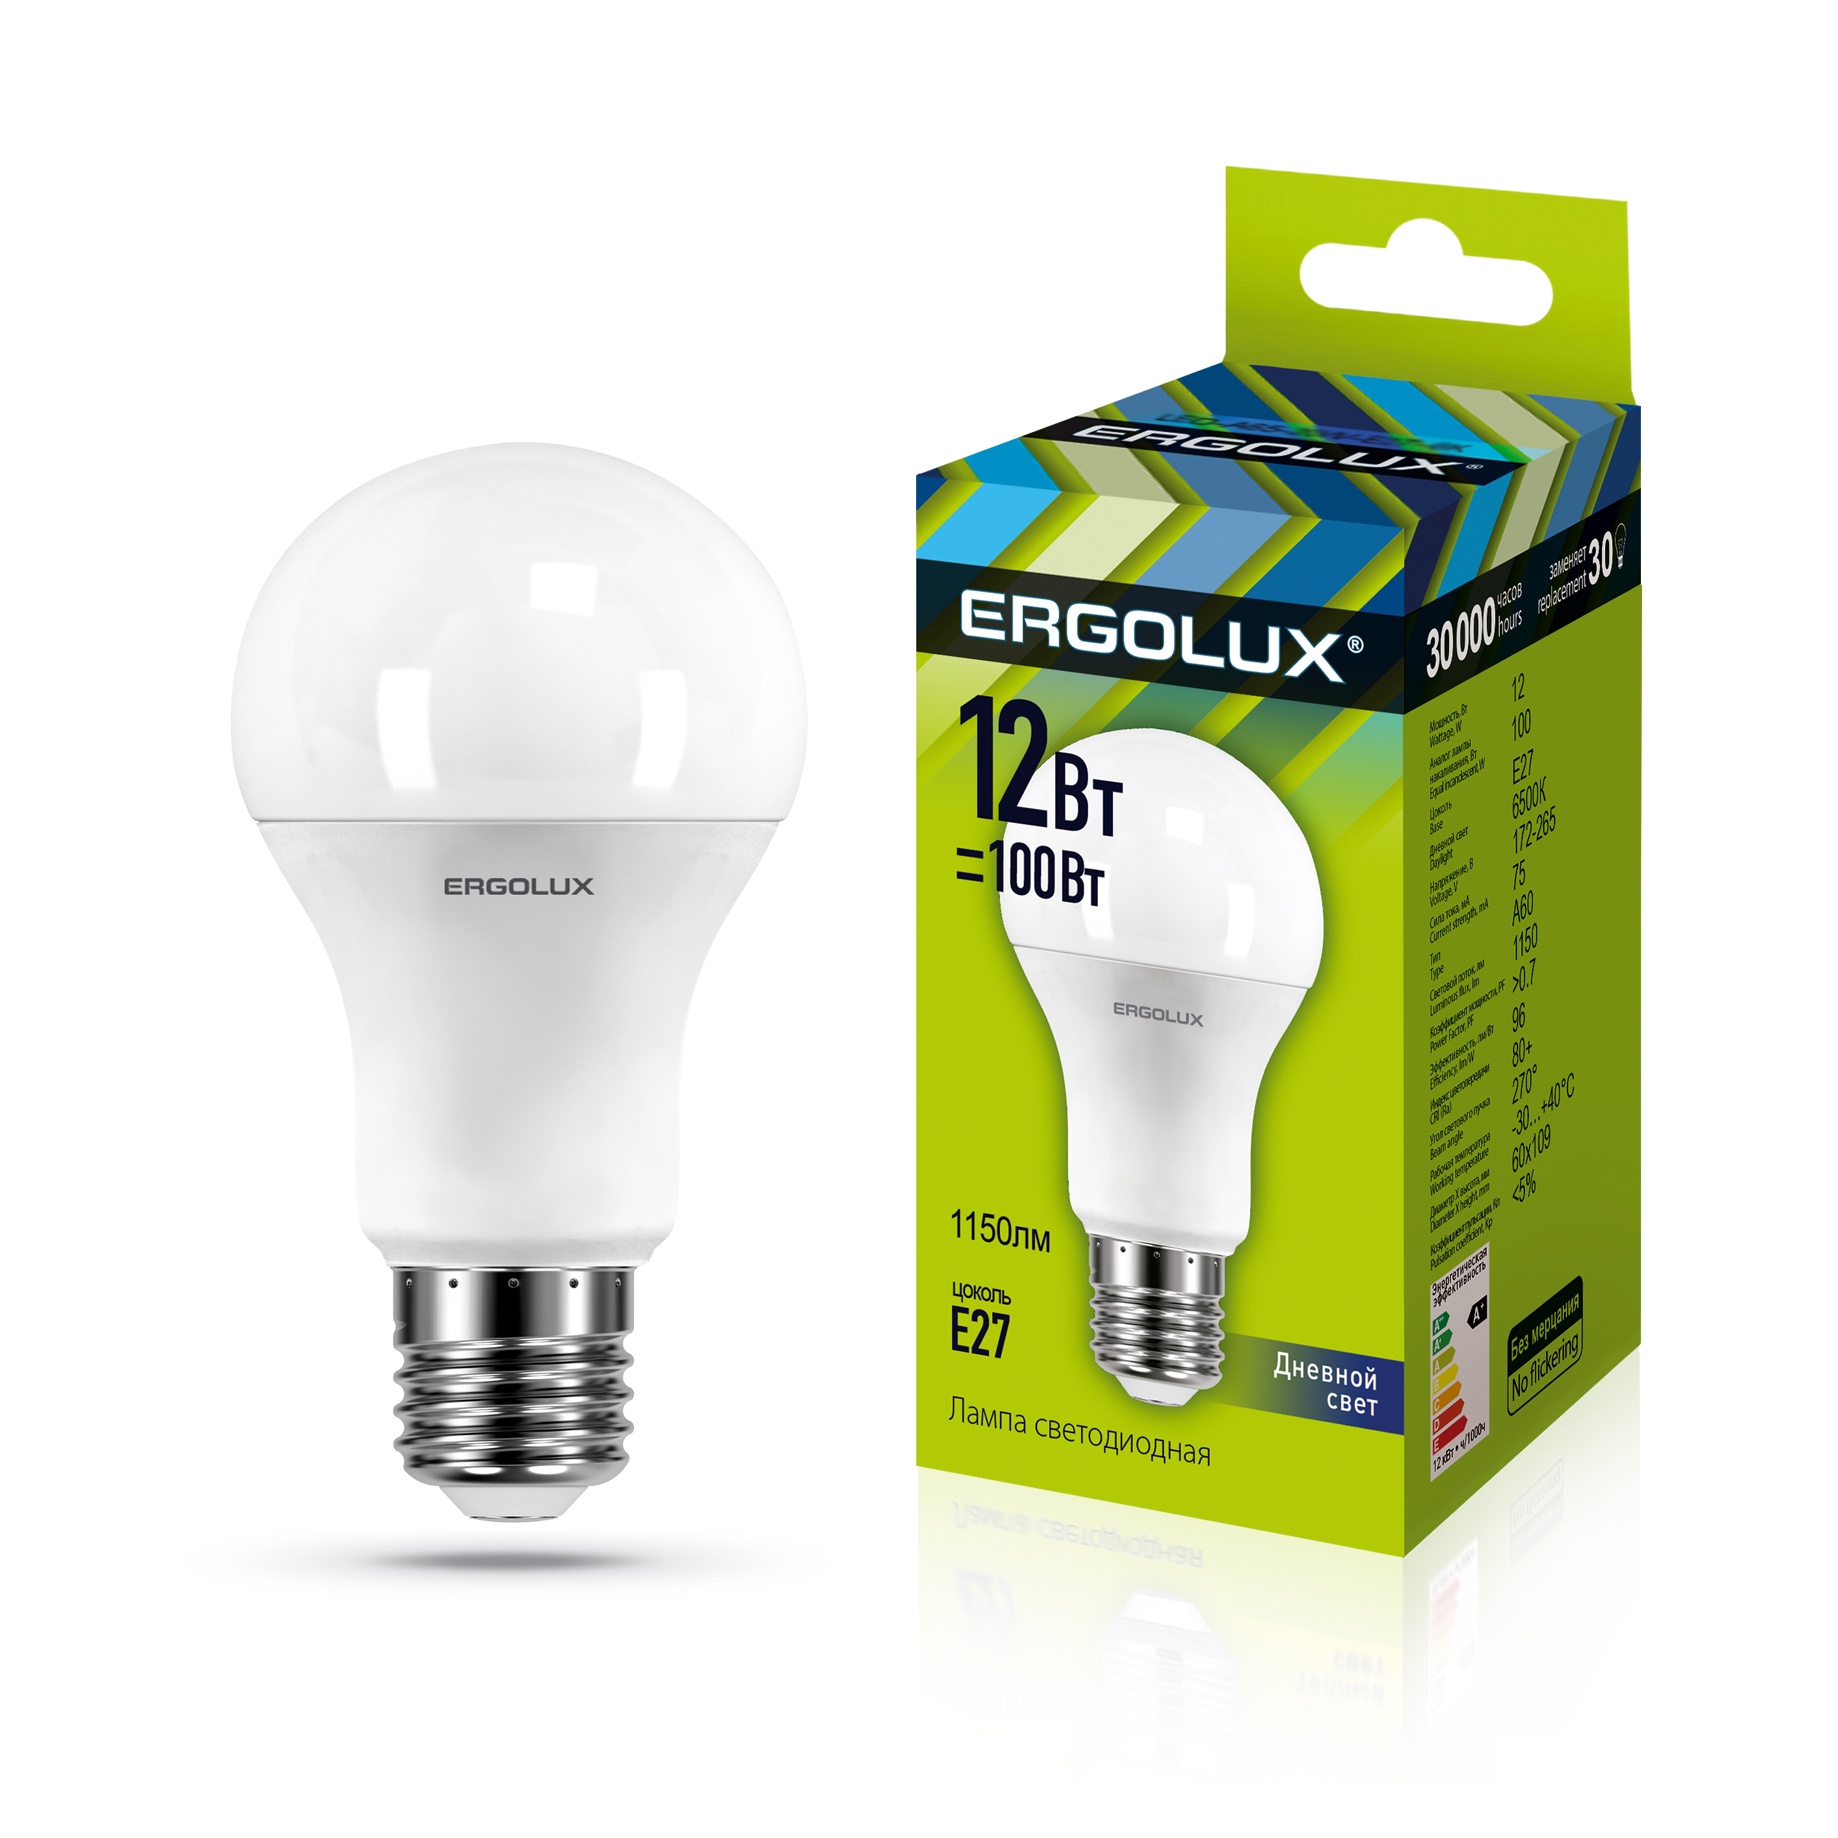 Ergolux LED-A60-12W-E27-6K (Эл.лампа светодиодная ЛОН 12Вт E27 6500K 180-240В)